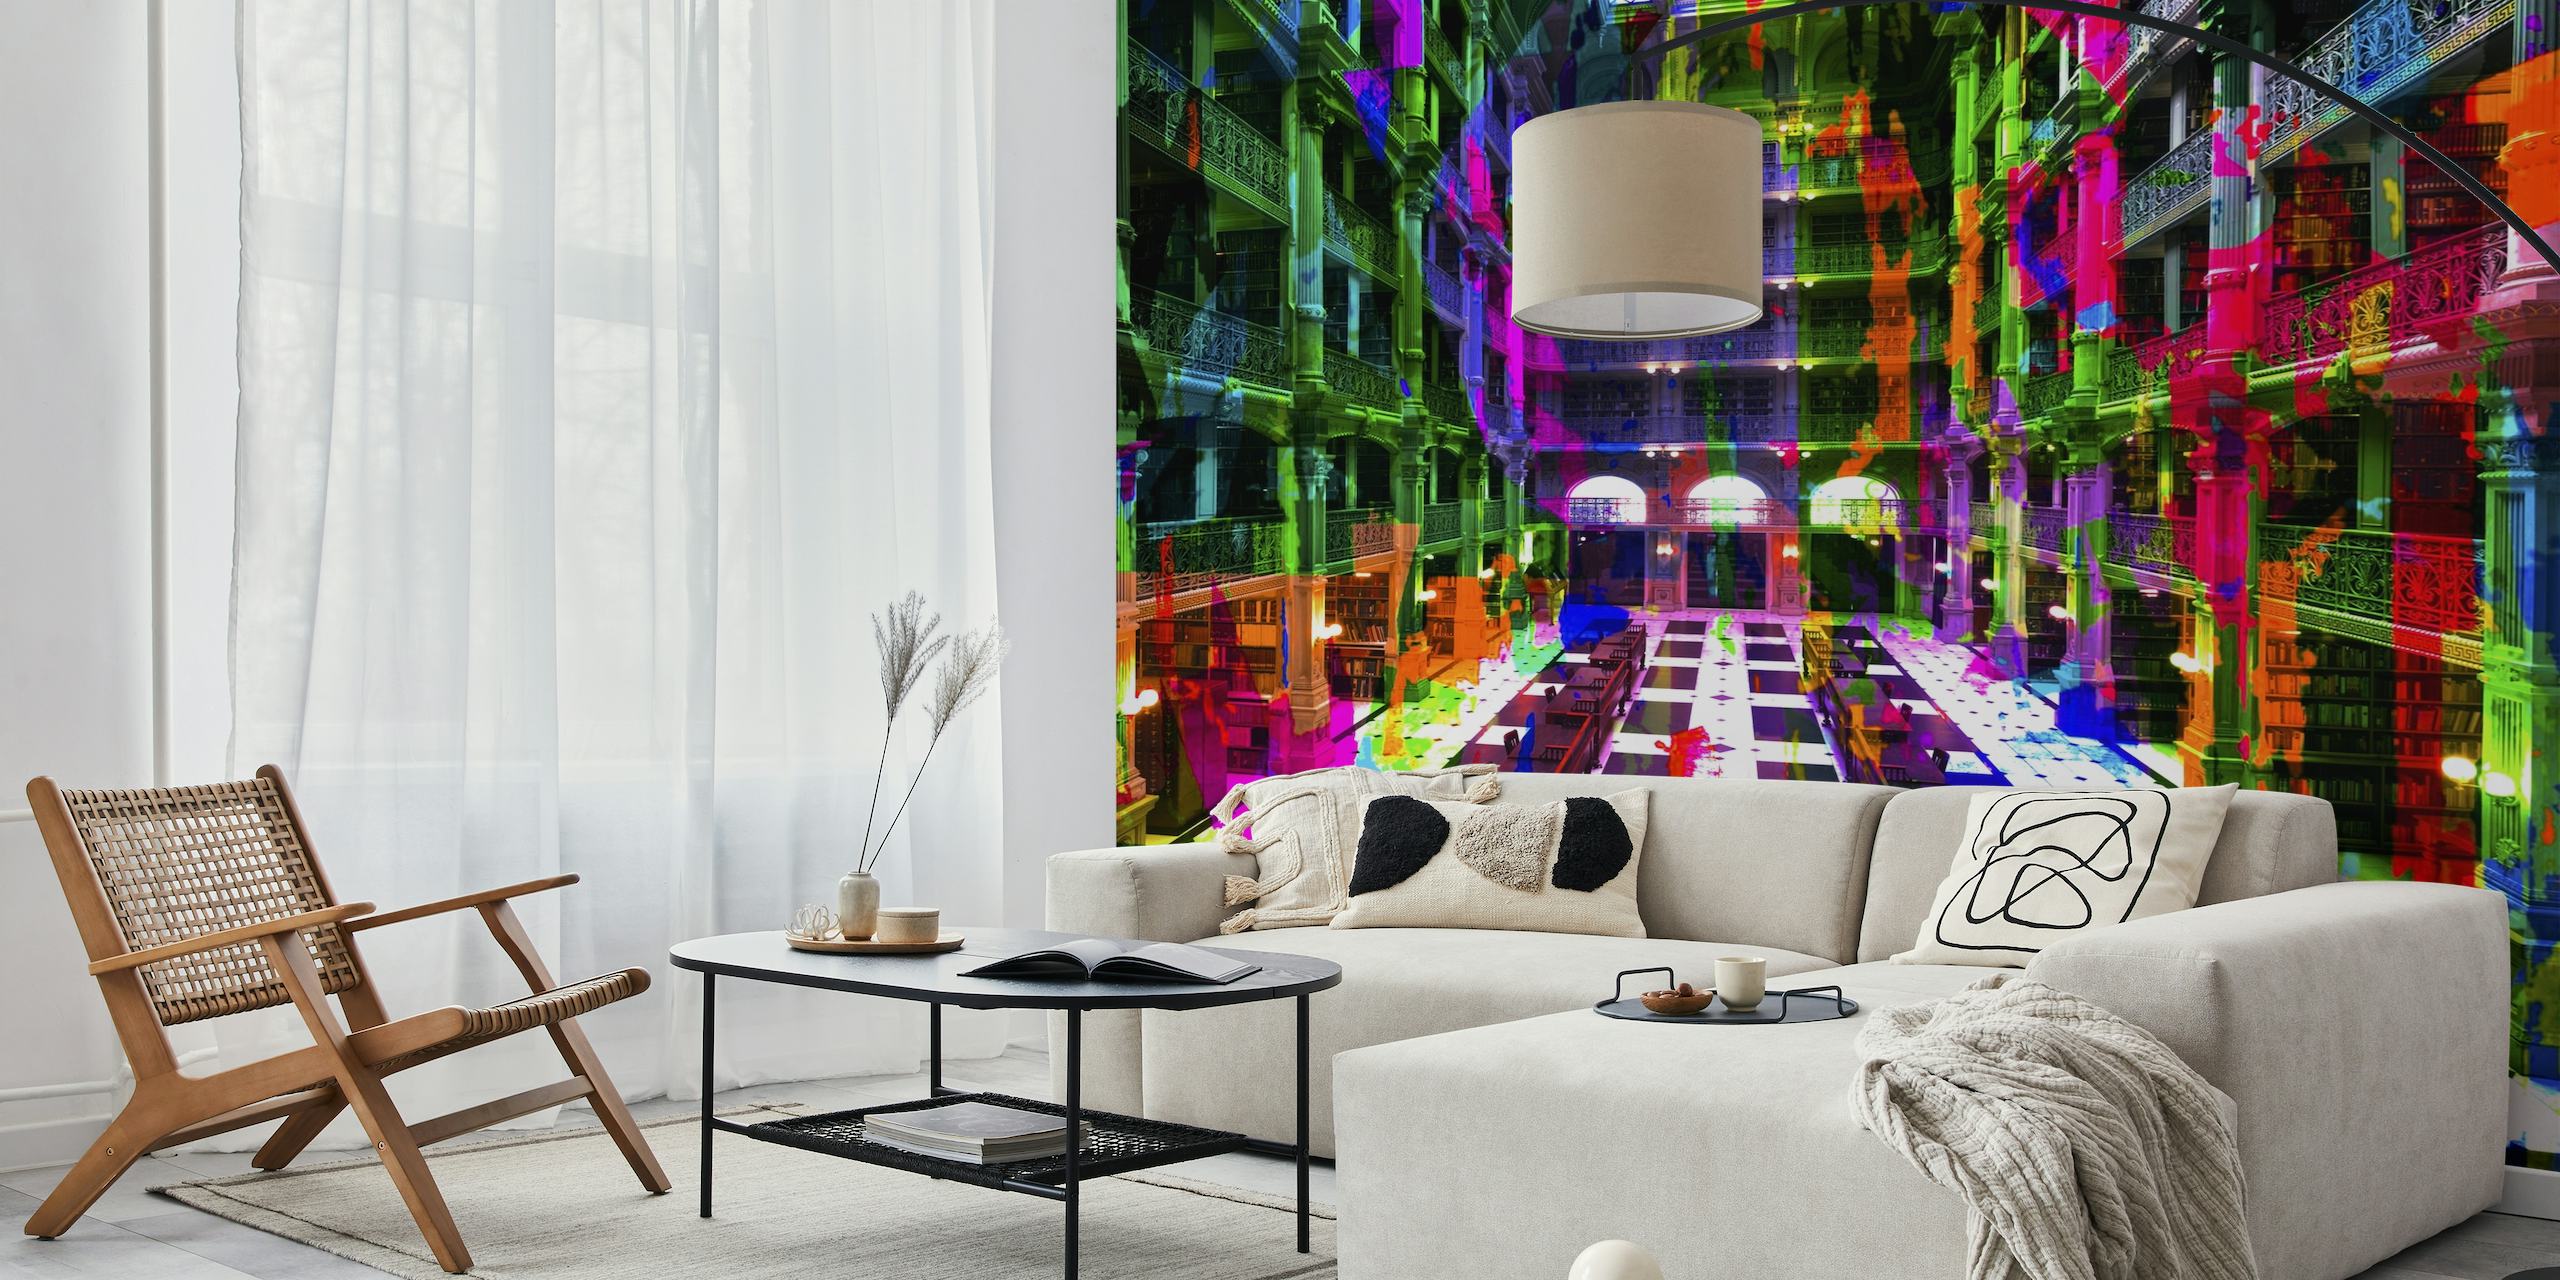 Farbenfrohes Wandbild im Pop-Art-Stil, das einen lebendigen Bibliothekskorridor darstellt